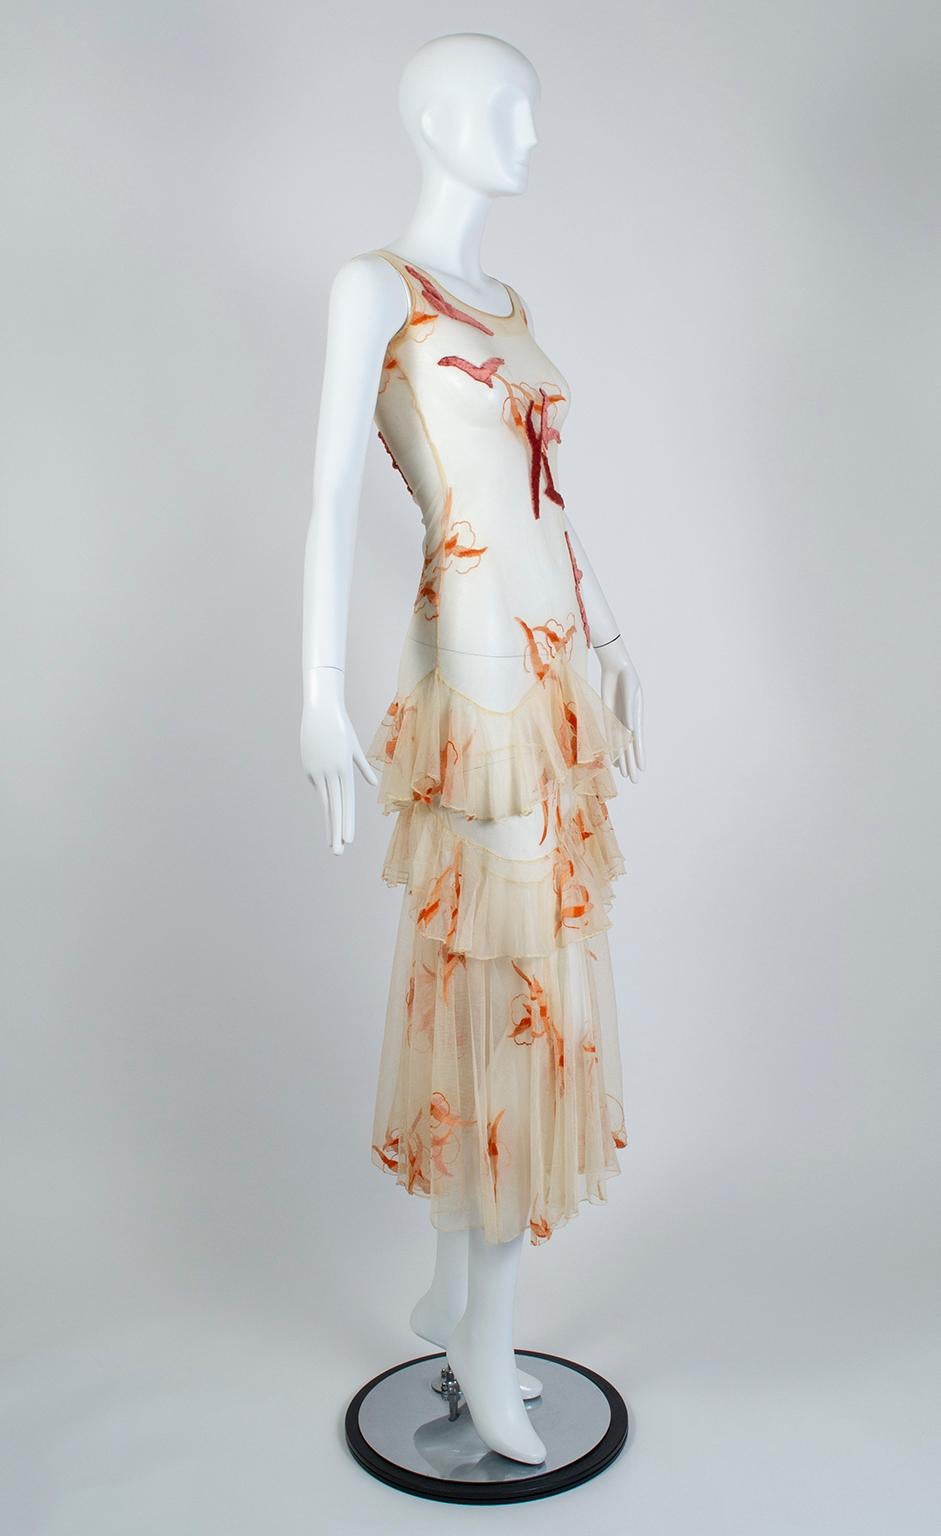 Dieses atemberaubende Kleid, das vollständig restauriert wurde, erinnert an die ätherischen Abendkleider von Jeanne Lanvin und Coco Chanel in den späten 1920er Jahren. Das Kleid besteht aus einem hautengen, nudefarbenen Netzstrumpf und hat einen